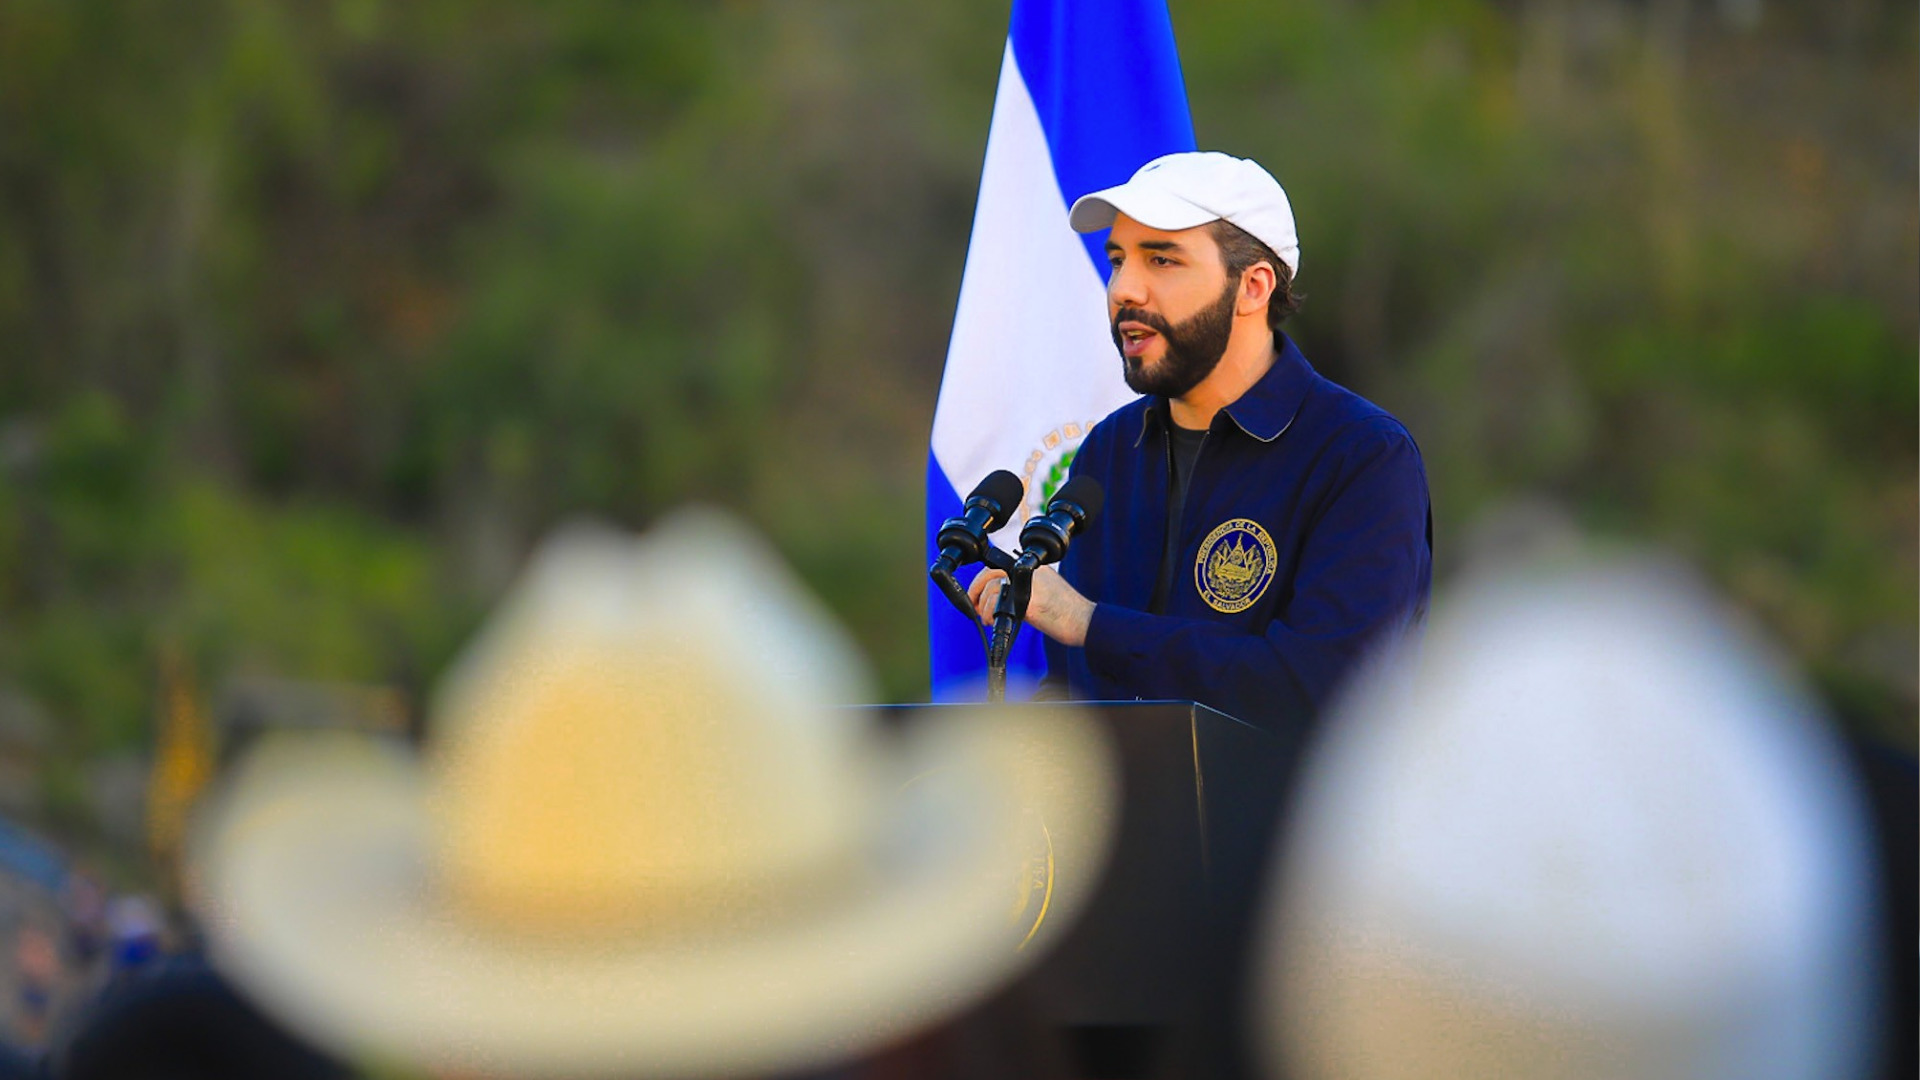 El Salvador's President Nayib Bukele. © presidencia.gob.sv